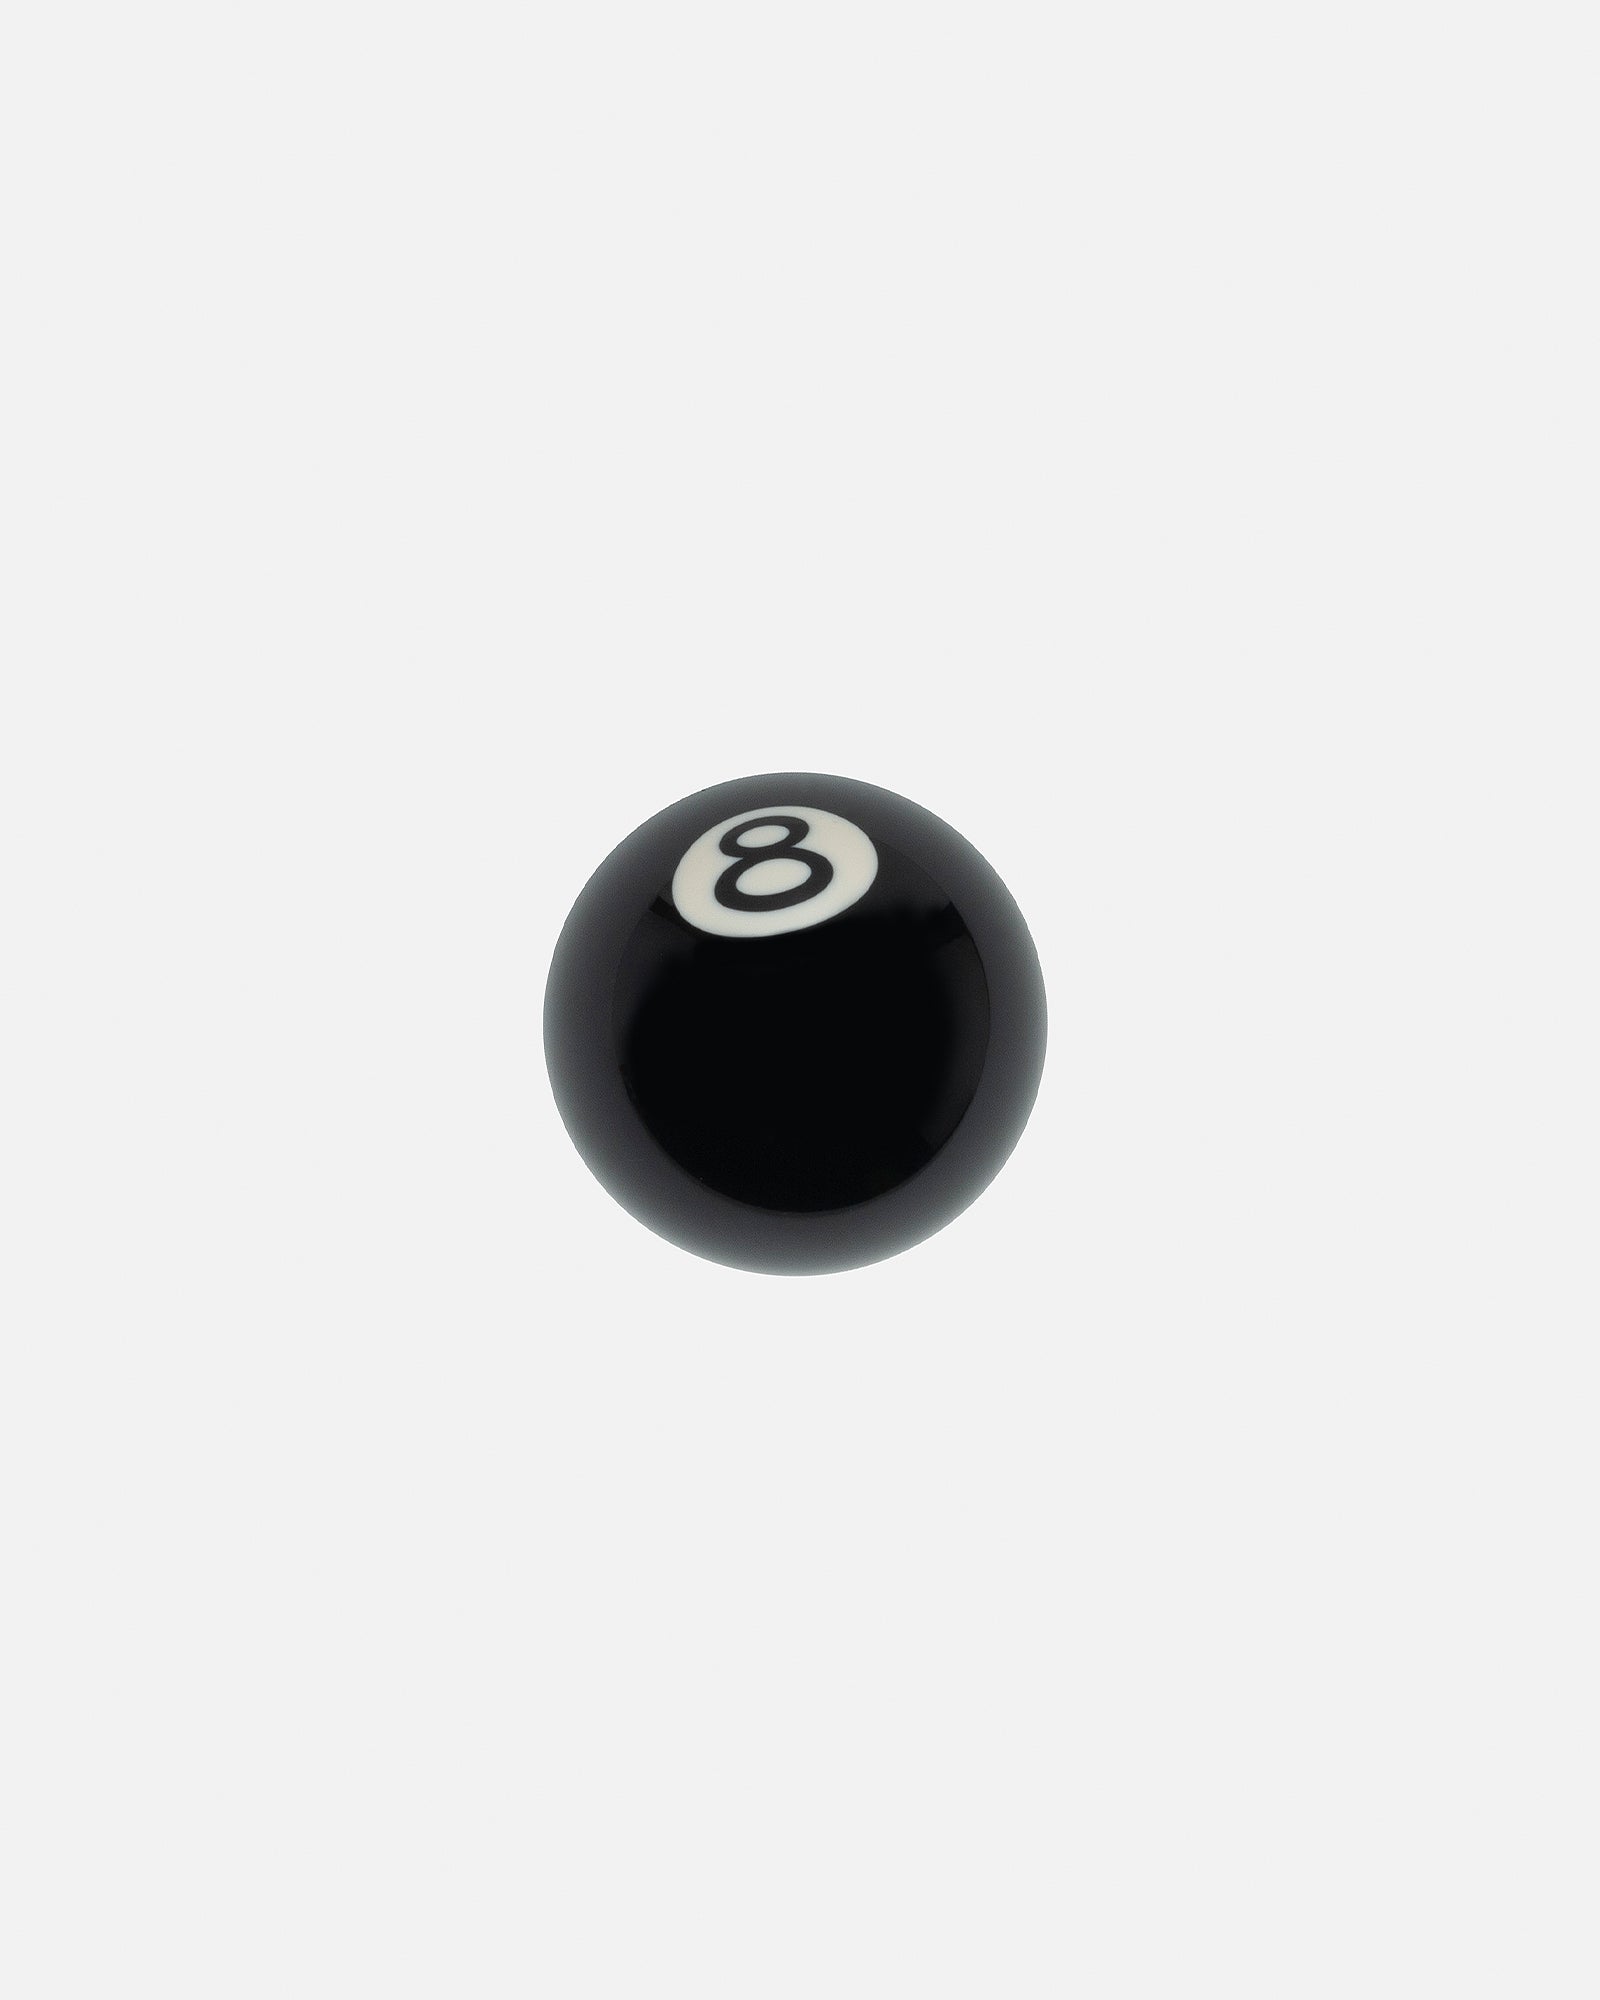 新品 stussy 8 BALL SHIFT KNOB シフトノブ 8ボール-